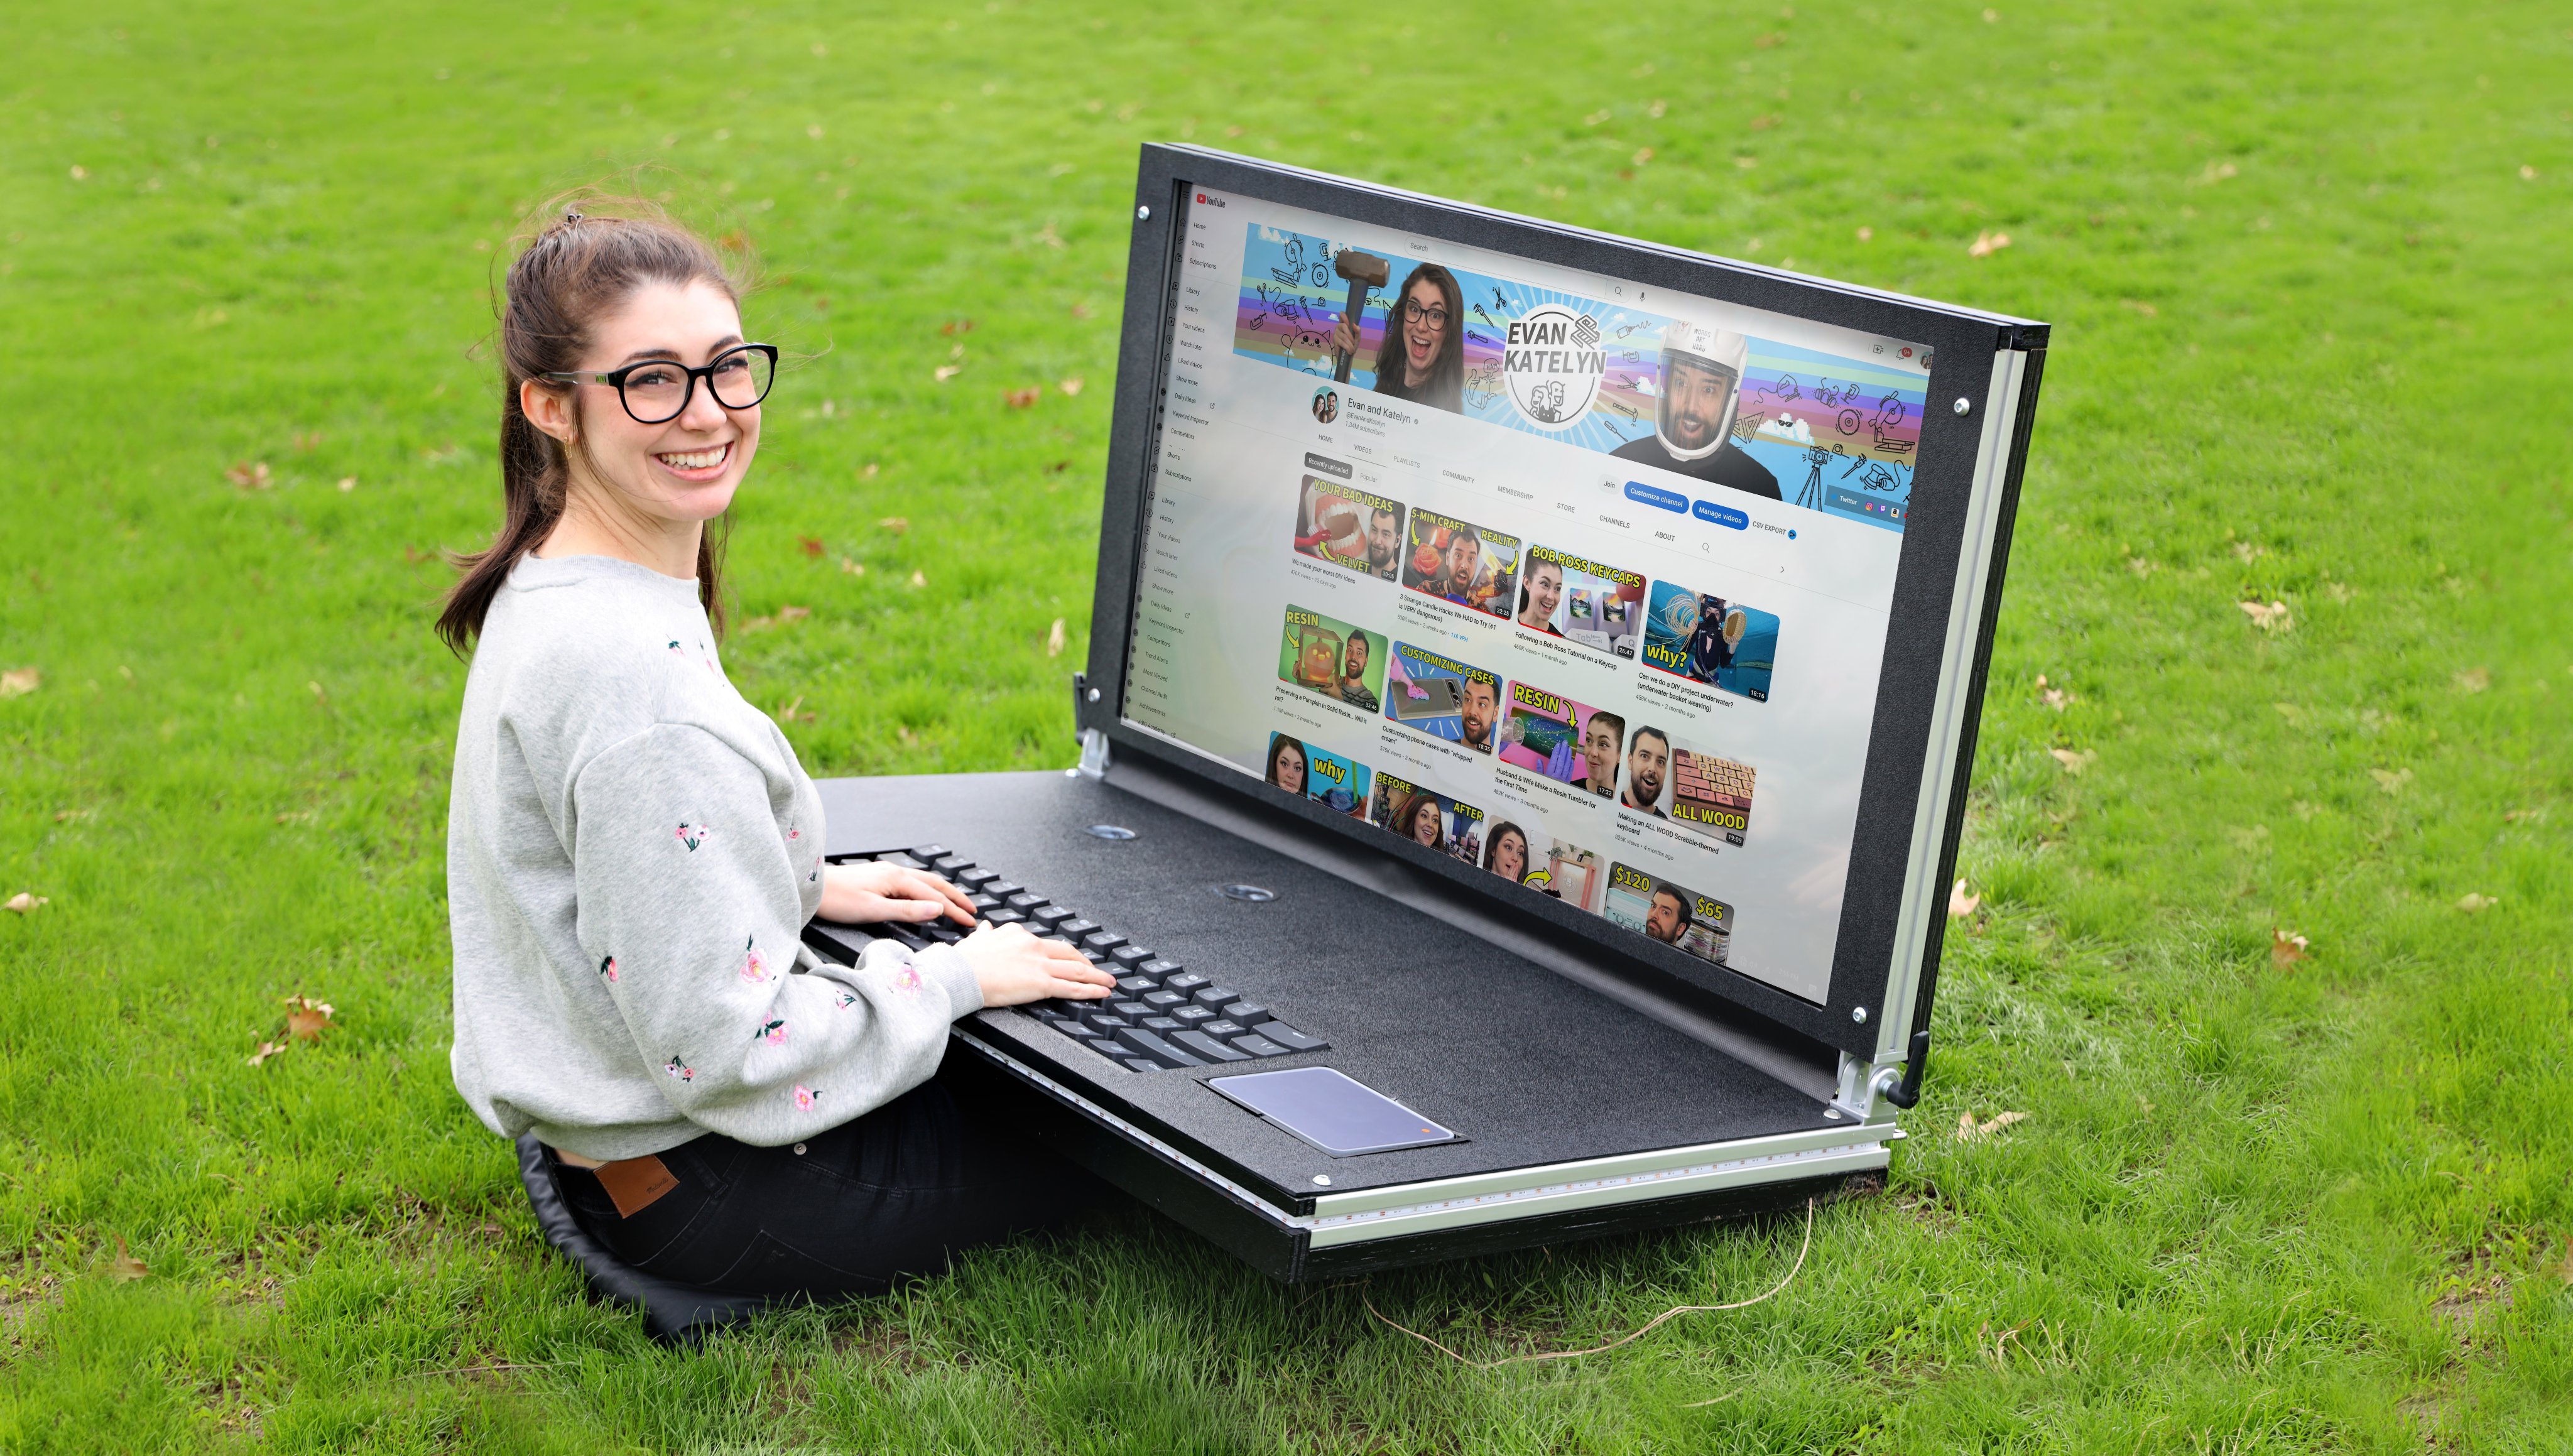 Blogger haben einen riesigen 43-Zoll-Laptop gebaut: TV als Bildschirm, 2,5 kg Tastatur und ein Gesamtgewicht von über 45 kg (Video)